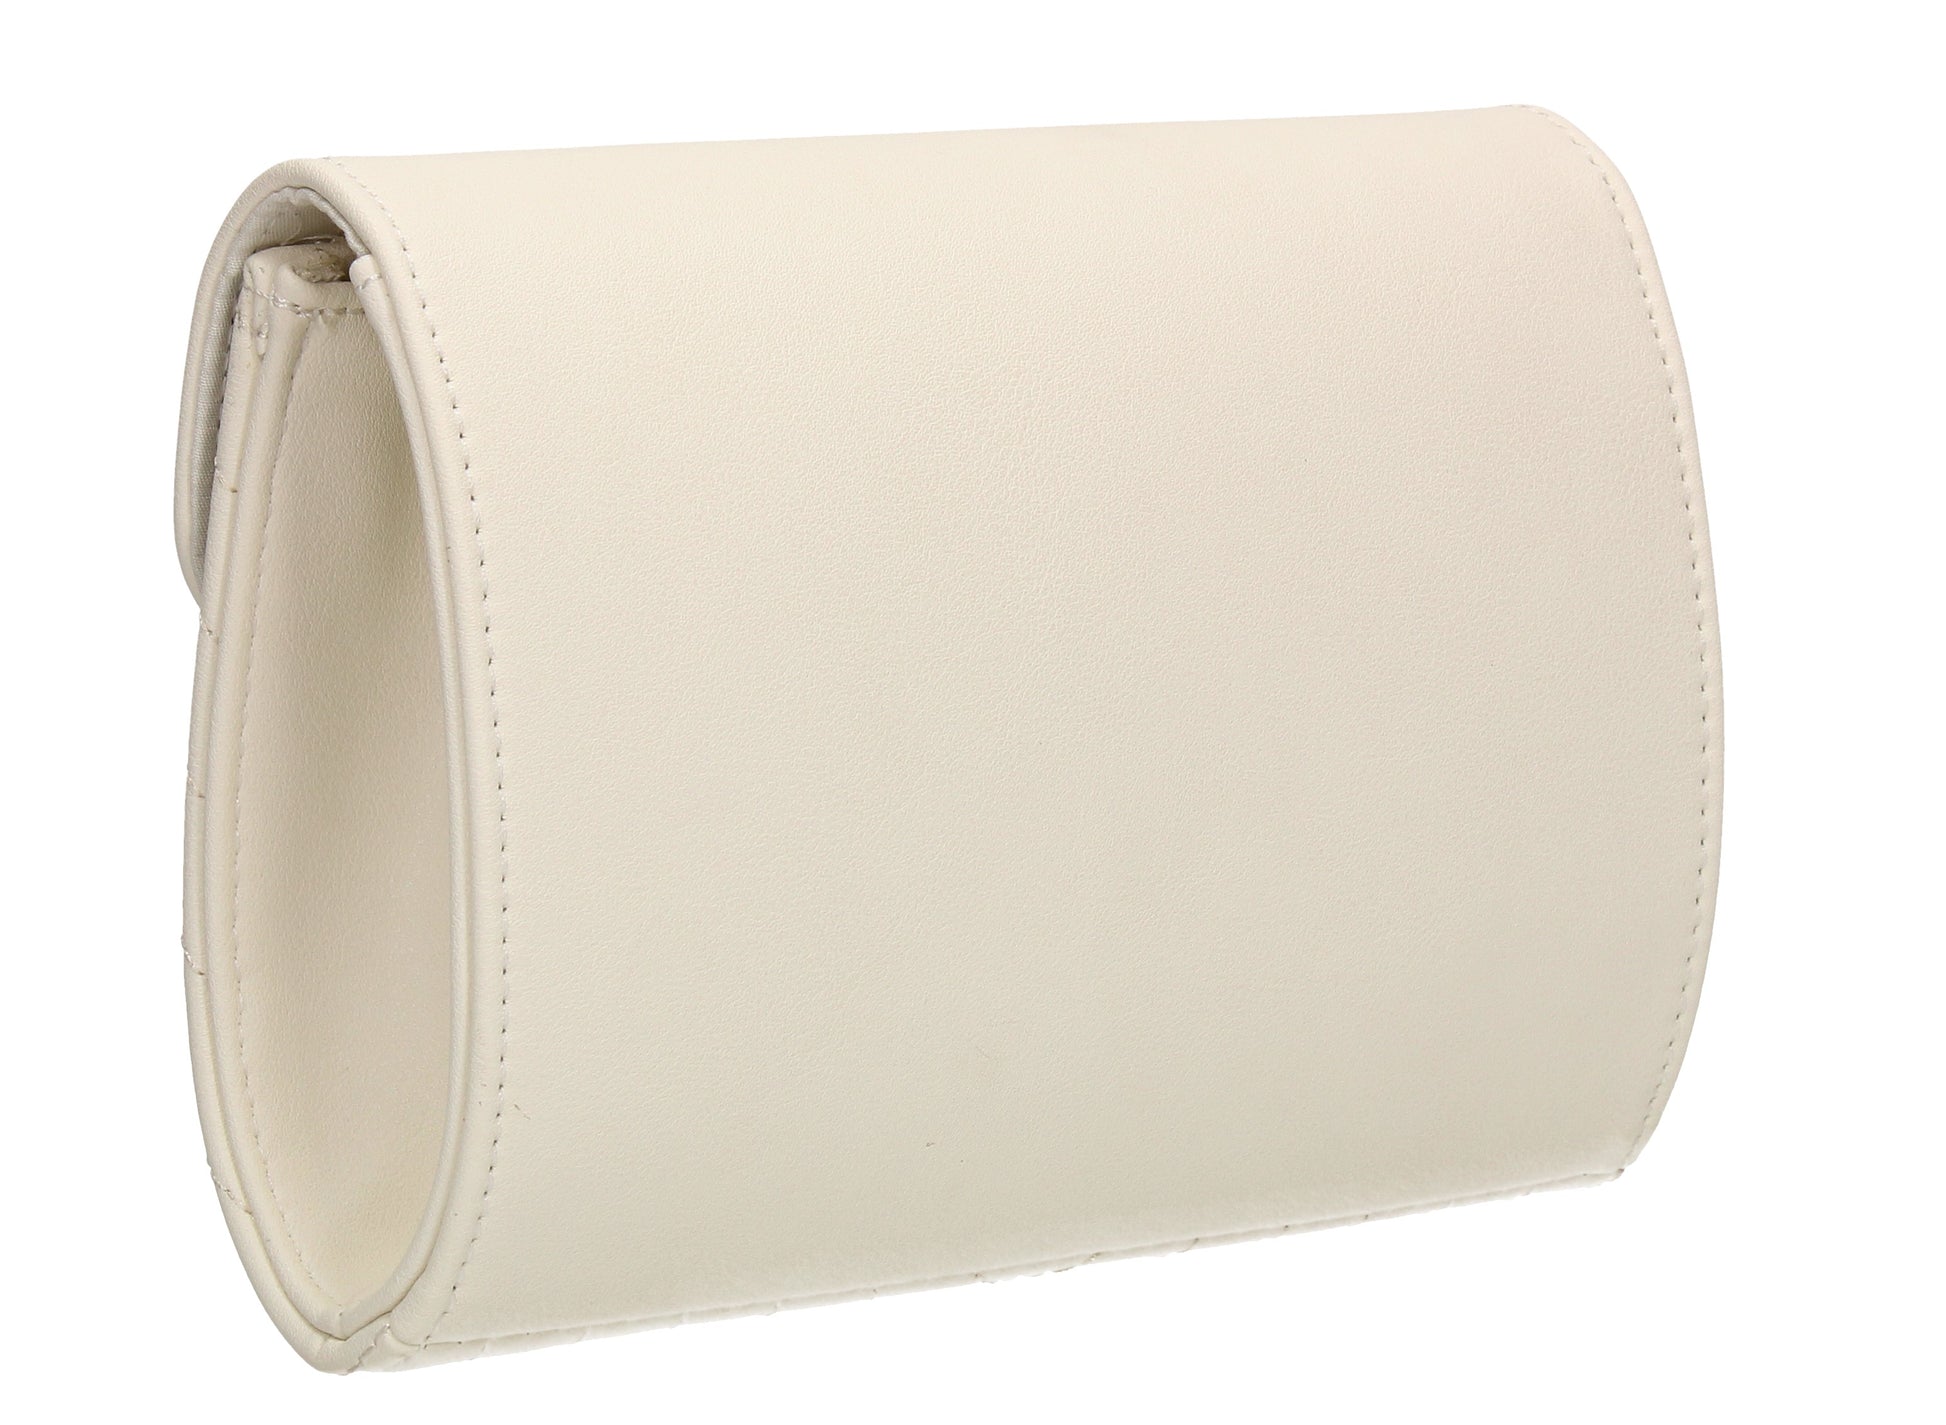 SWANKYSWANS Serafina Stud Clutch Bag Cream Cute Cheap Clutch Bag For Weddings School and Work